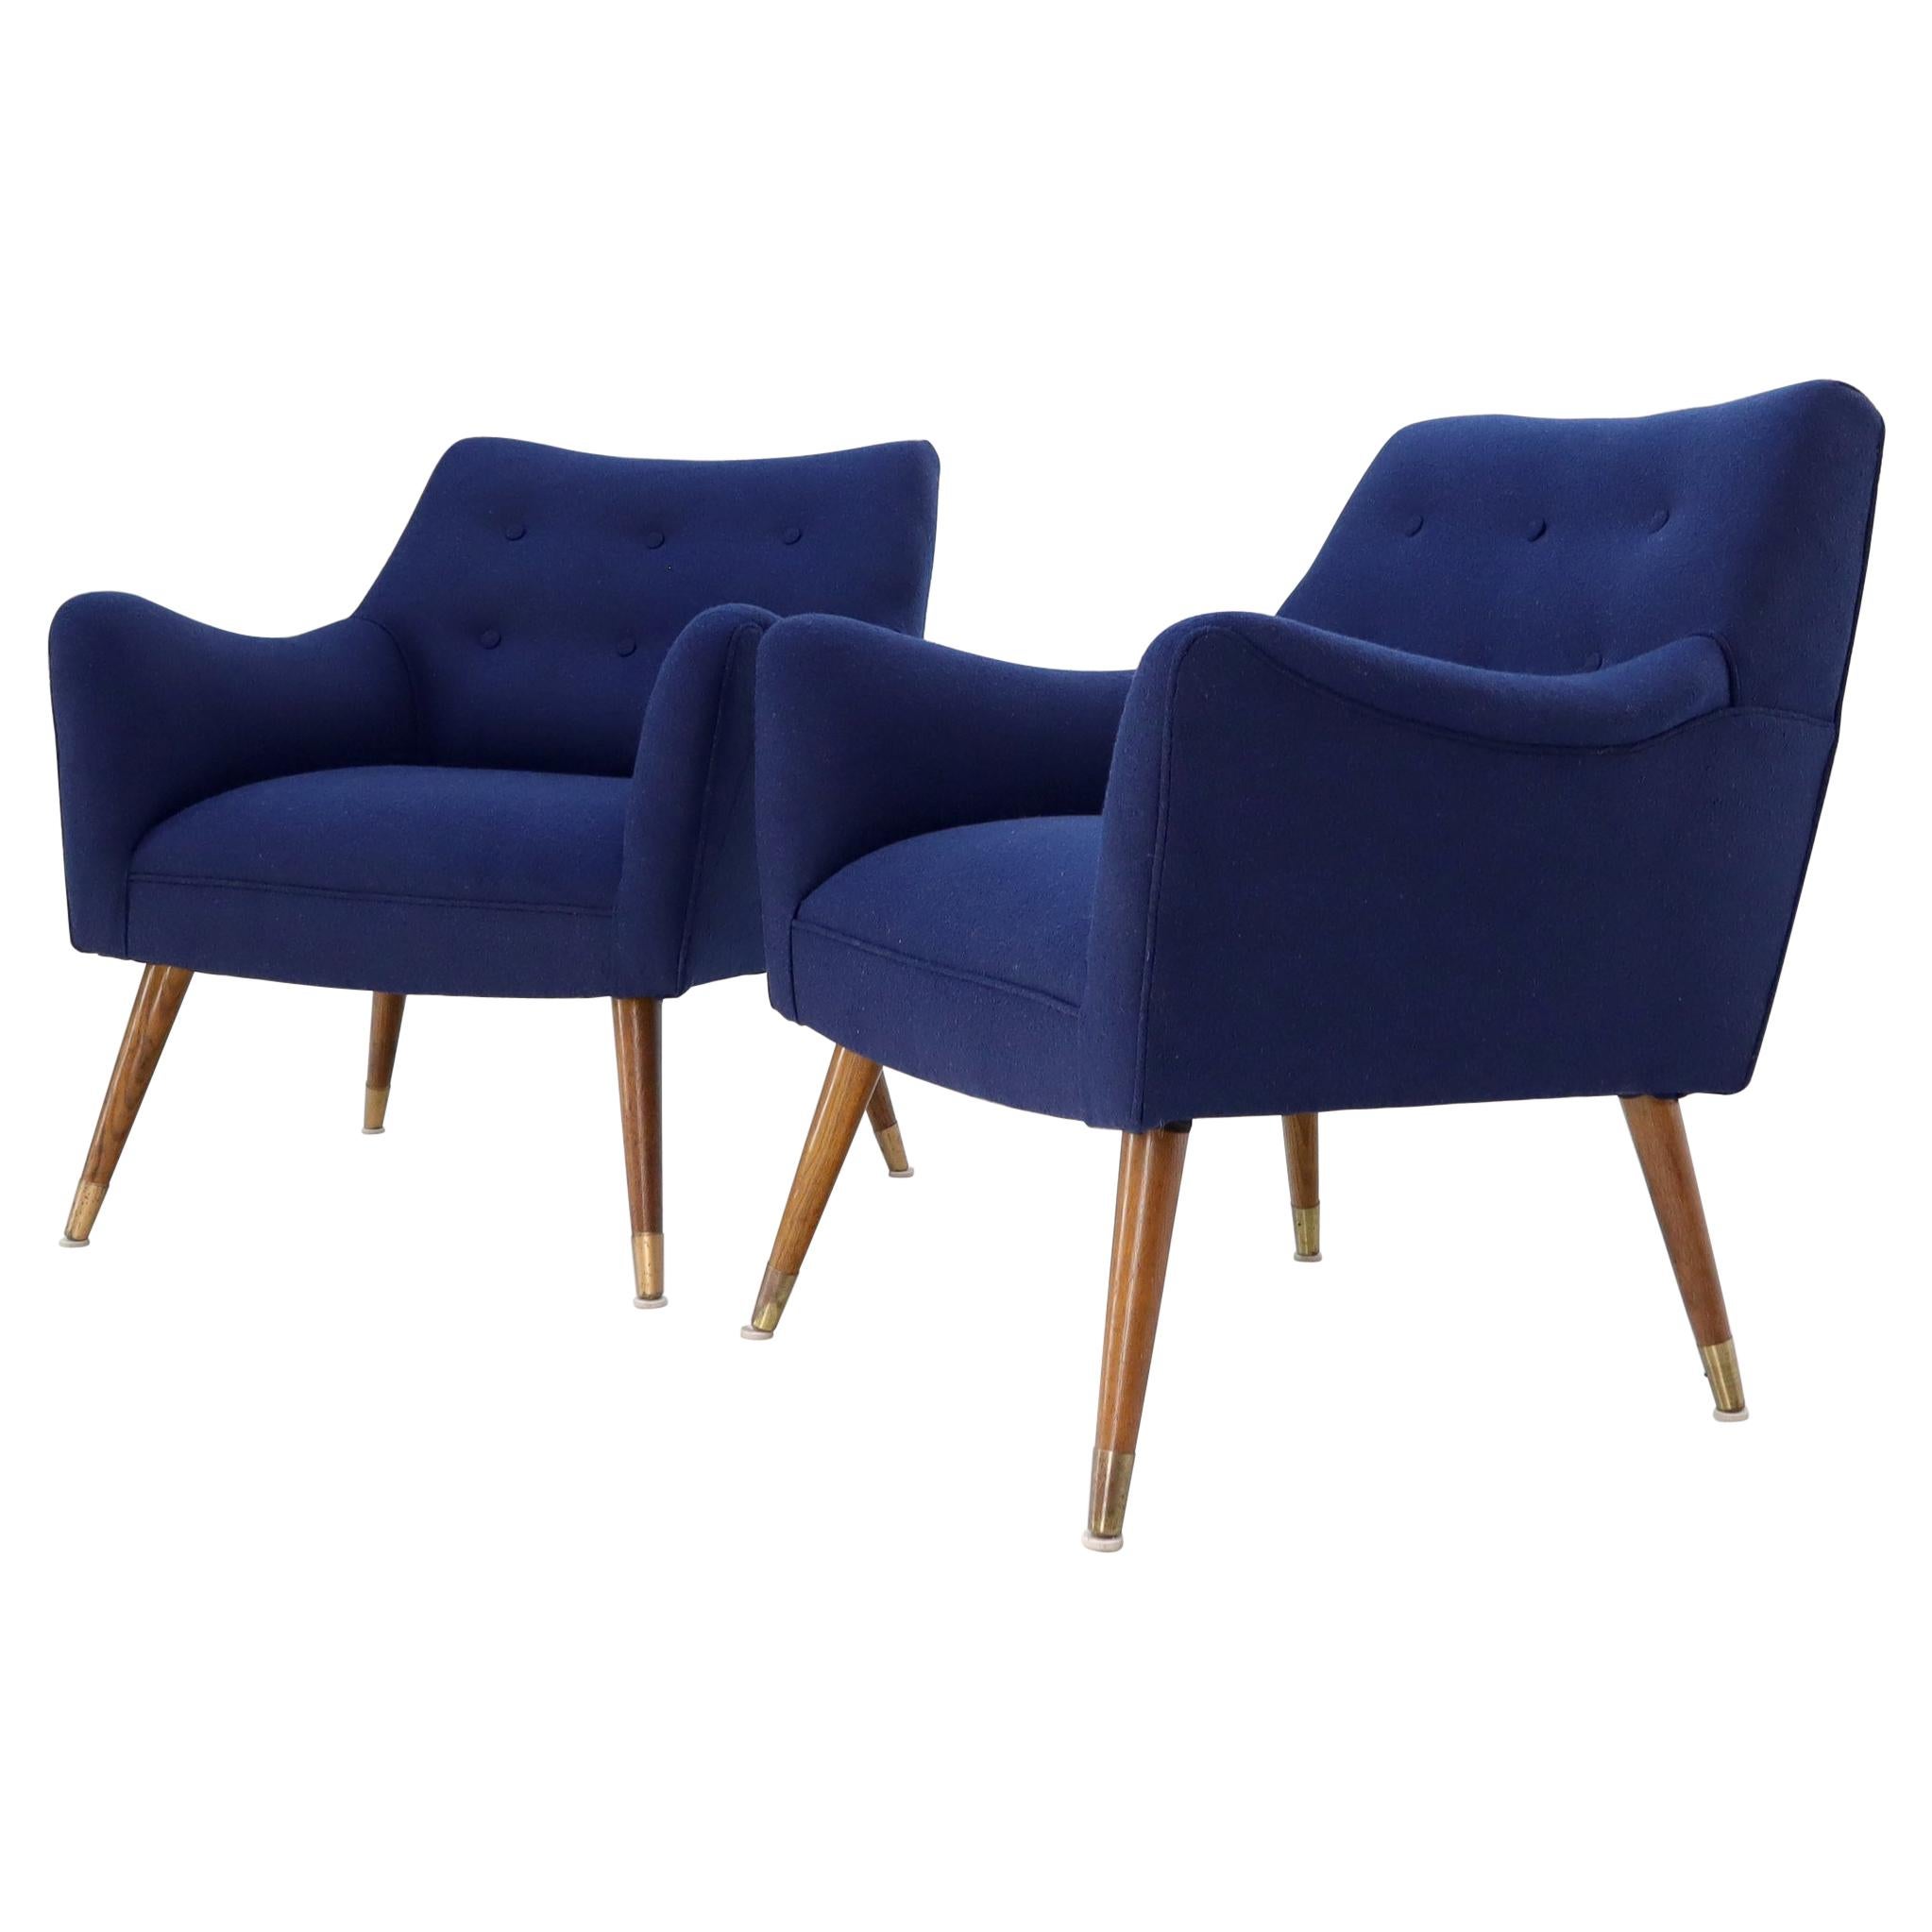 Paire de fauteuils de salon de style mi-siècle moderne bleu marine sur pieds chevilles effilés